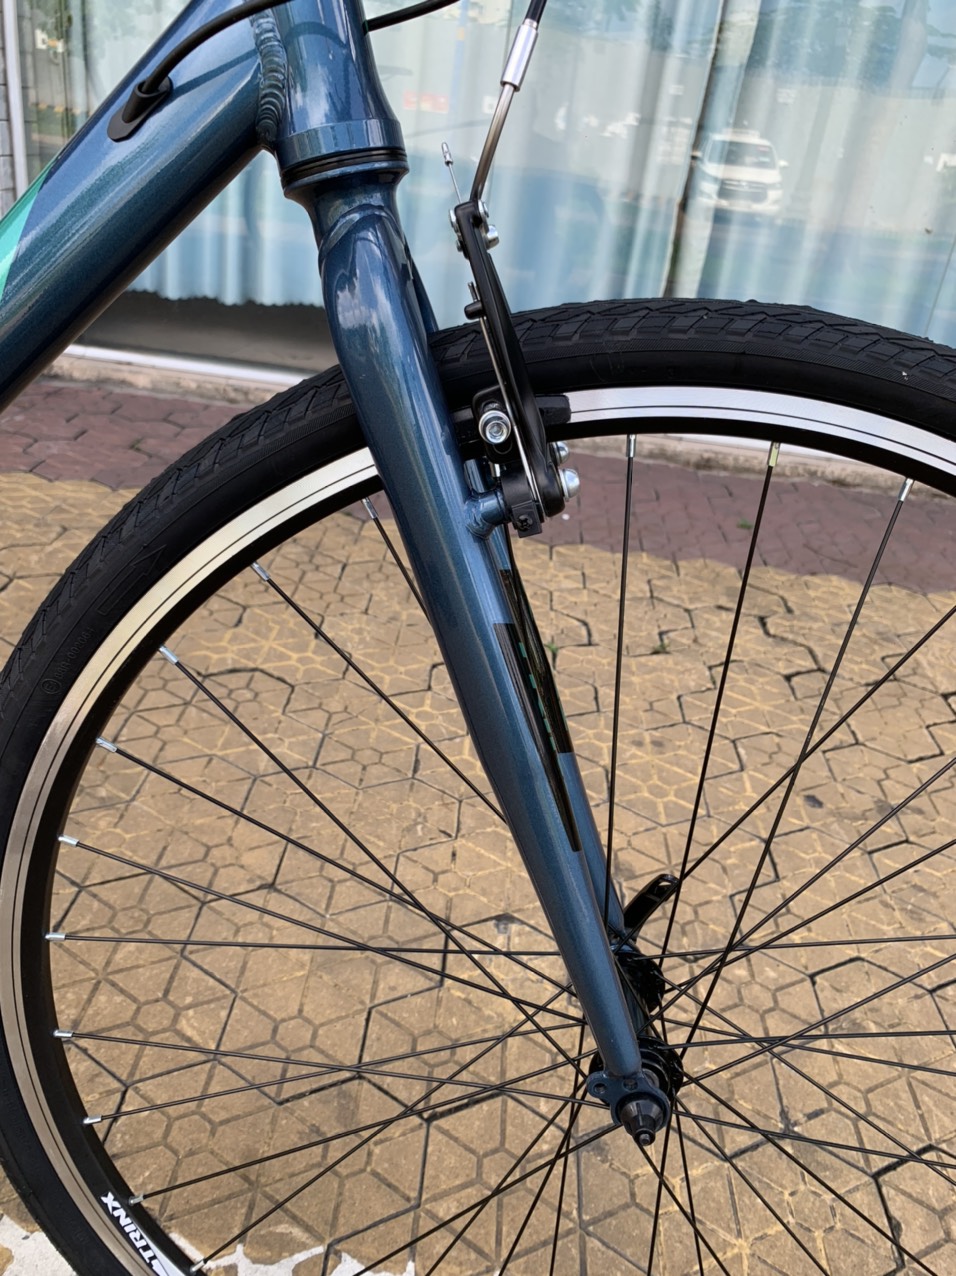 Xe đạp thể thao TRINX FREE 1.0 2020 Blue Black